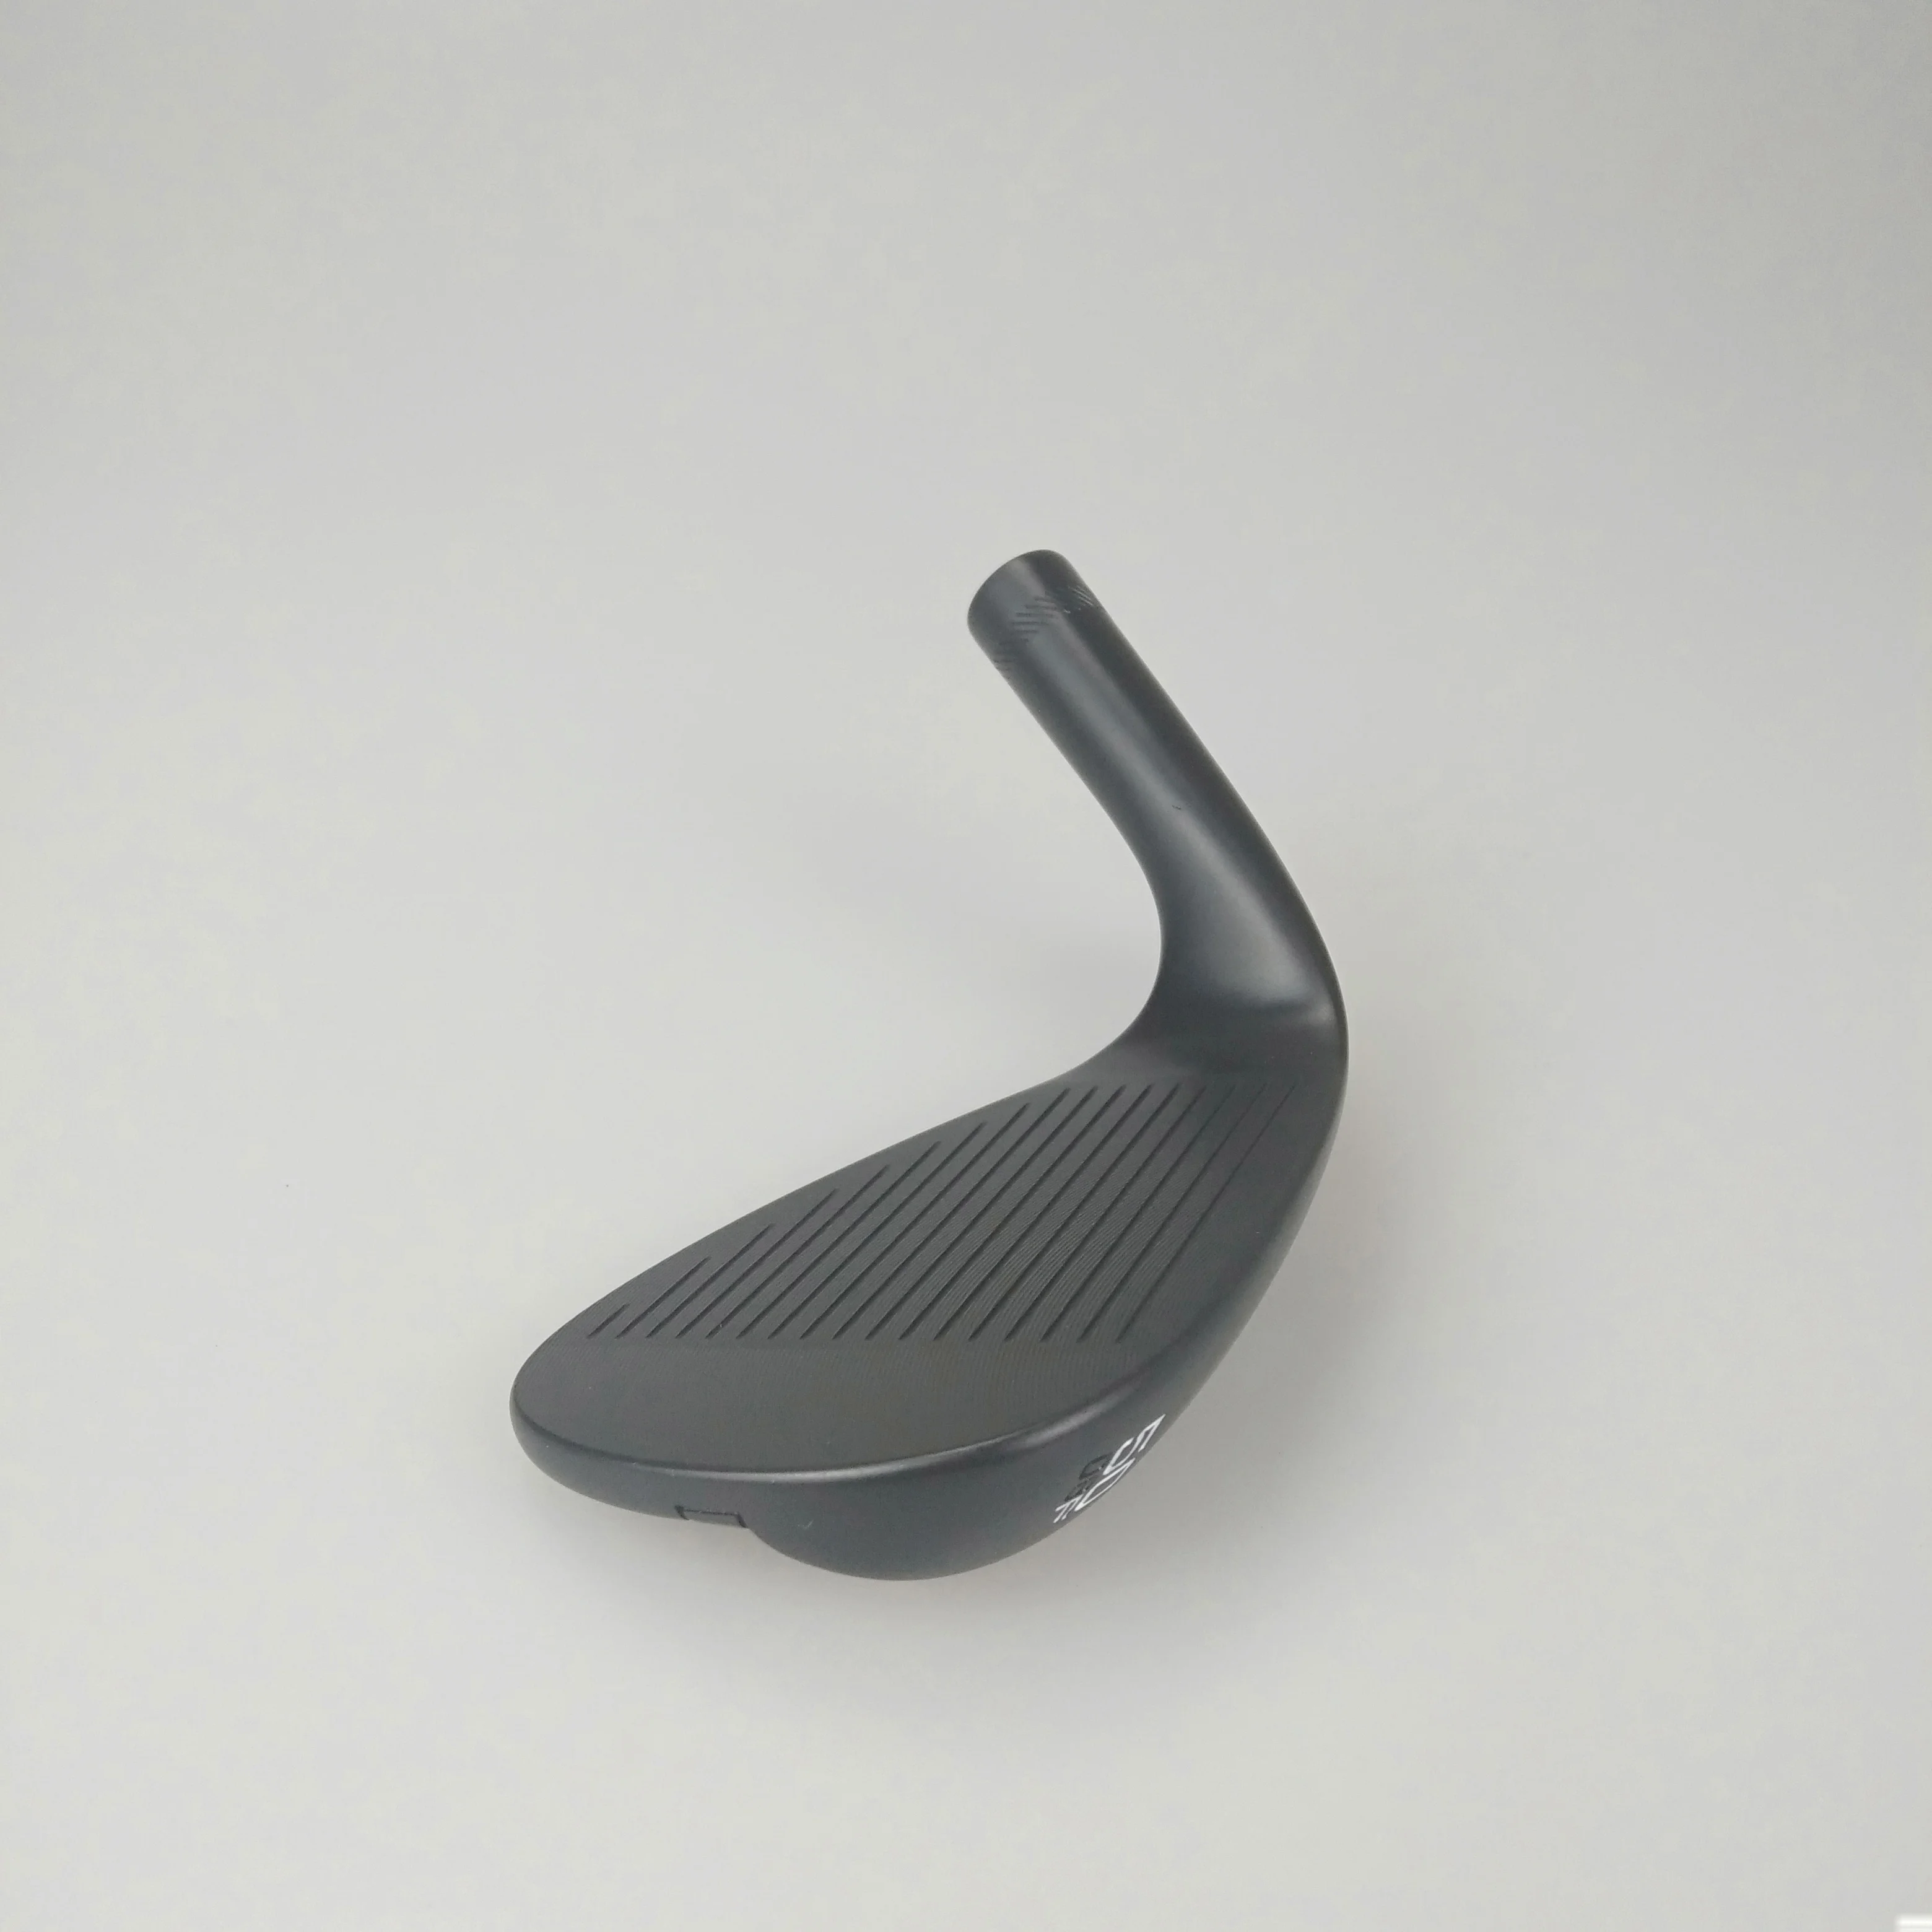 Клюшки для гольфа черные SM-8 клинья 50-60 графитовые валы для гольфа с покрытием для головы Деревянные клюшки